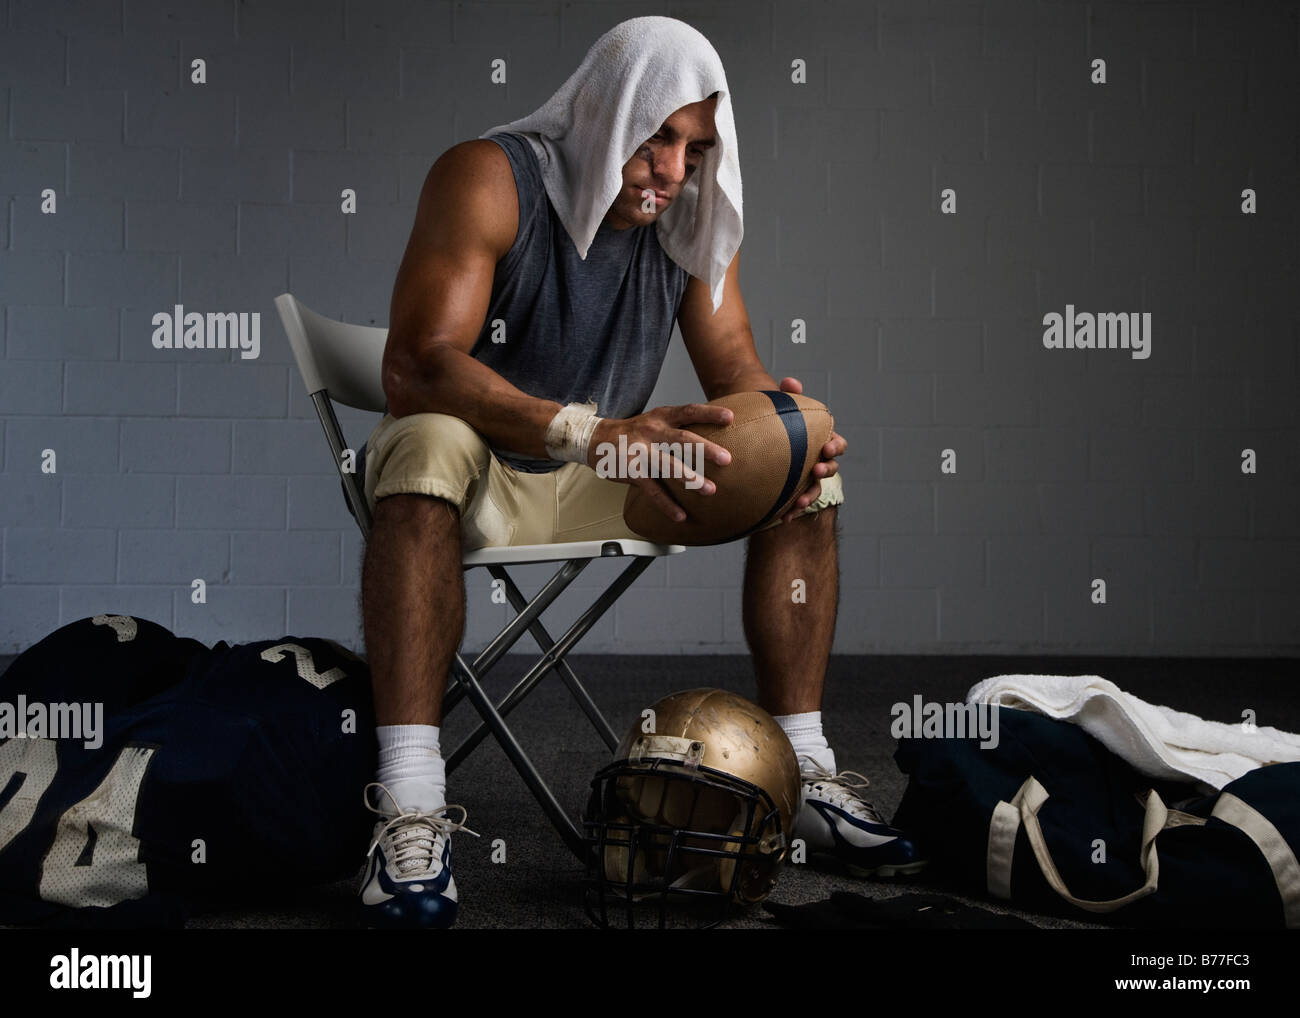 Fußball Spieler Handtuch auf Kopf Umkleideraum Stockfotografie - Alamy